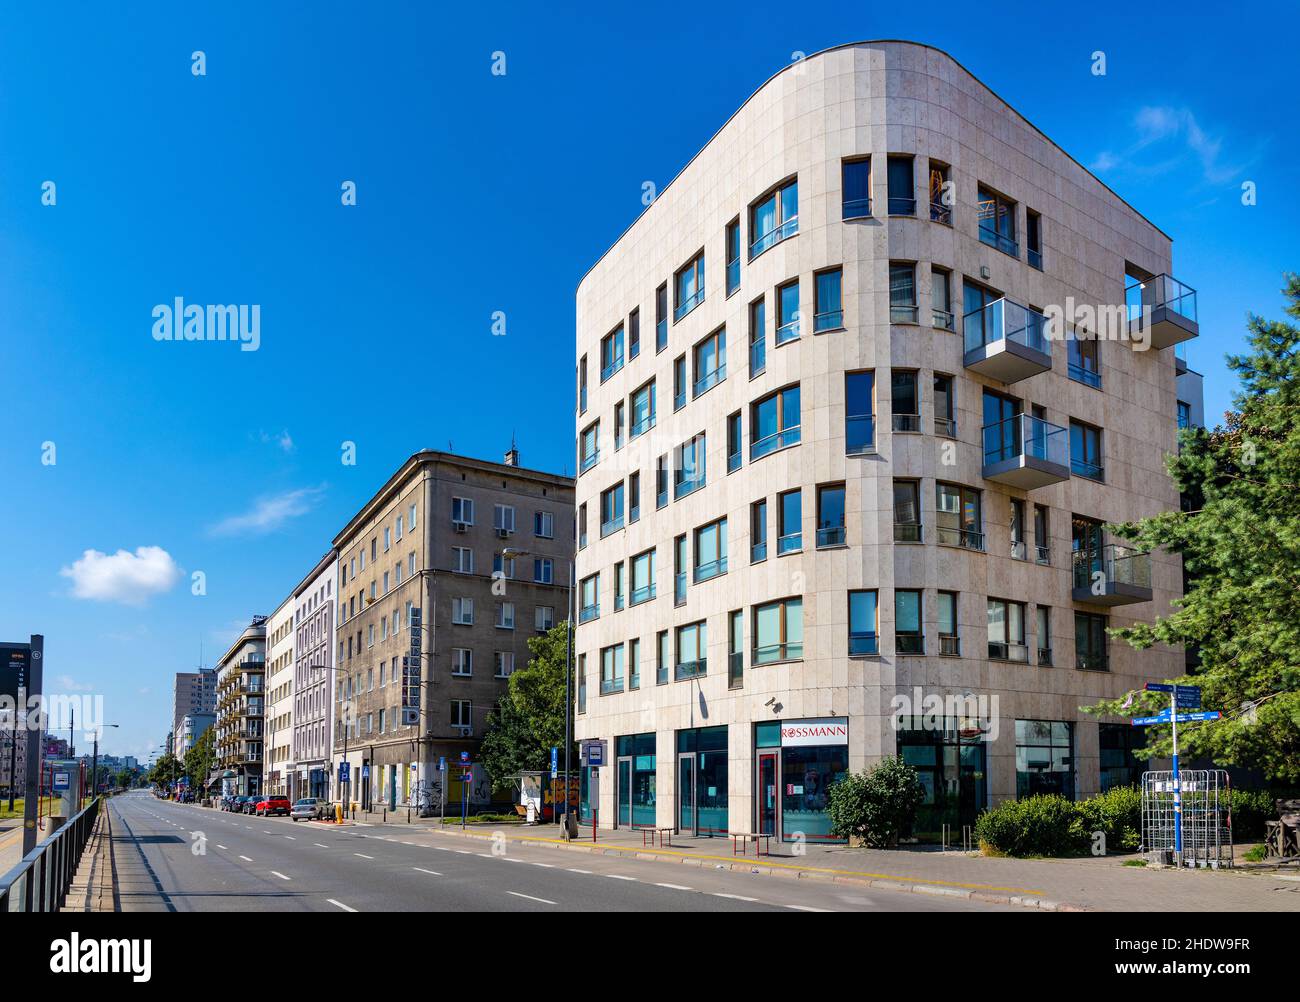 Varsavia, Polonia - 11 luglio 2021: Panorama di via Pulawska con un mix di architettura residenziale storica, comunista e modernista a Mokotow Foto Stock